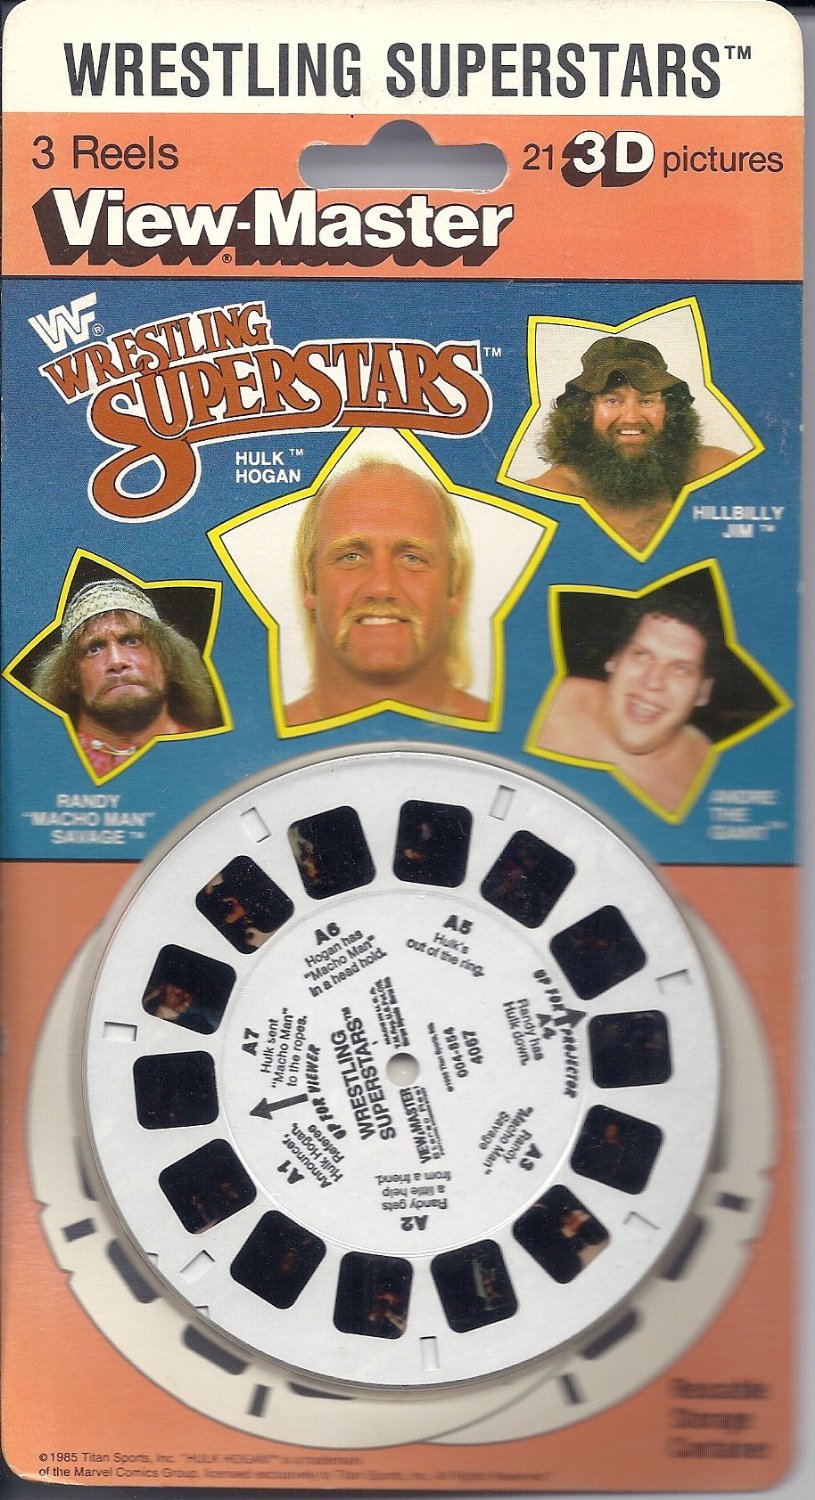 https://www.wrestlecrap.com/app/uploads/wc/2013/03/WWF-View-Master-reels-in-box.jpg